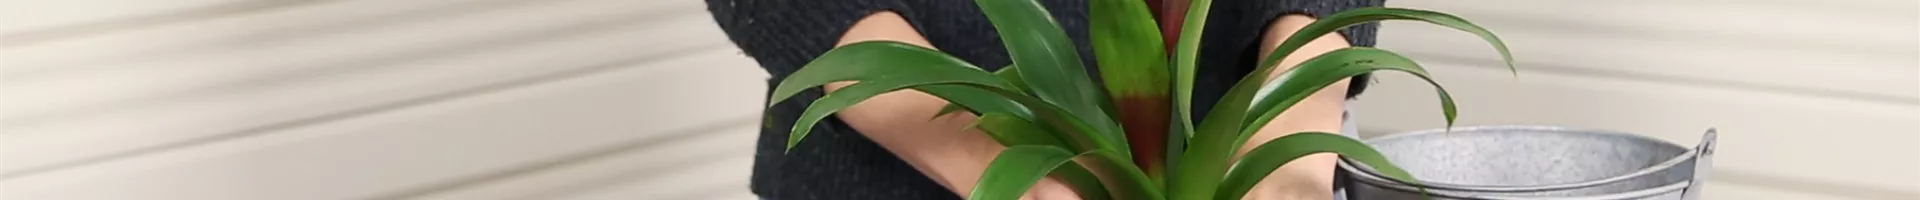 Bromelie - Einpflanzen in ein Gefäß (Thumbnail).jpg